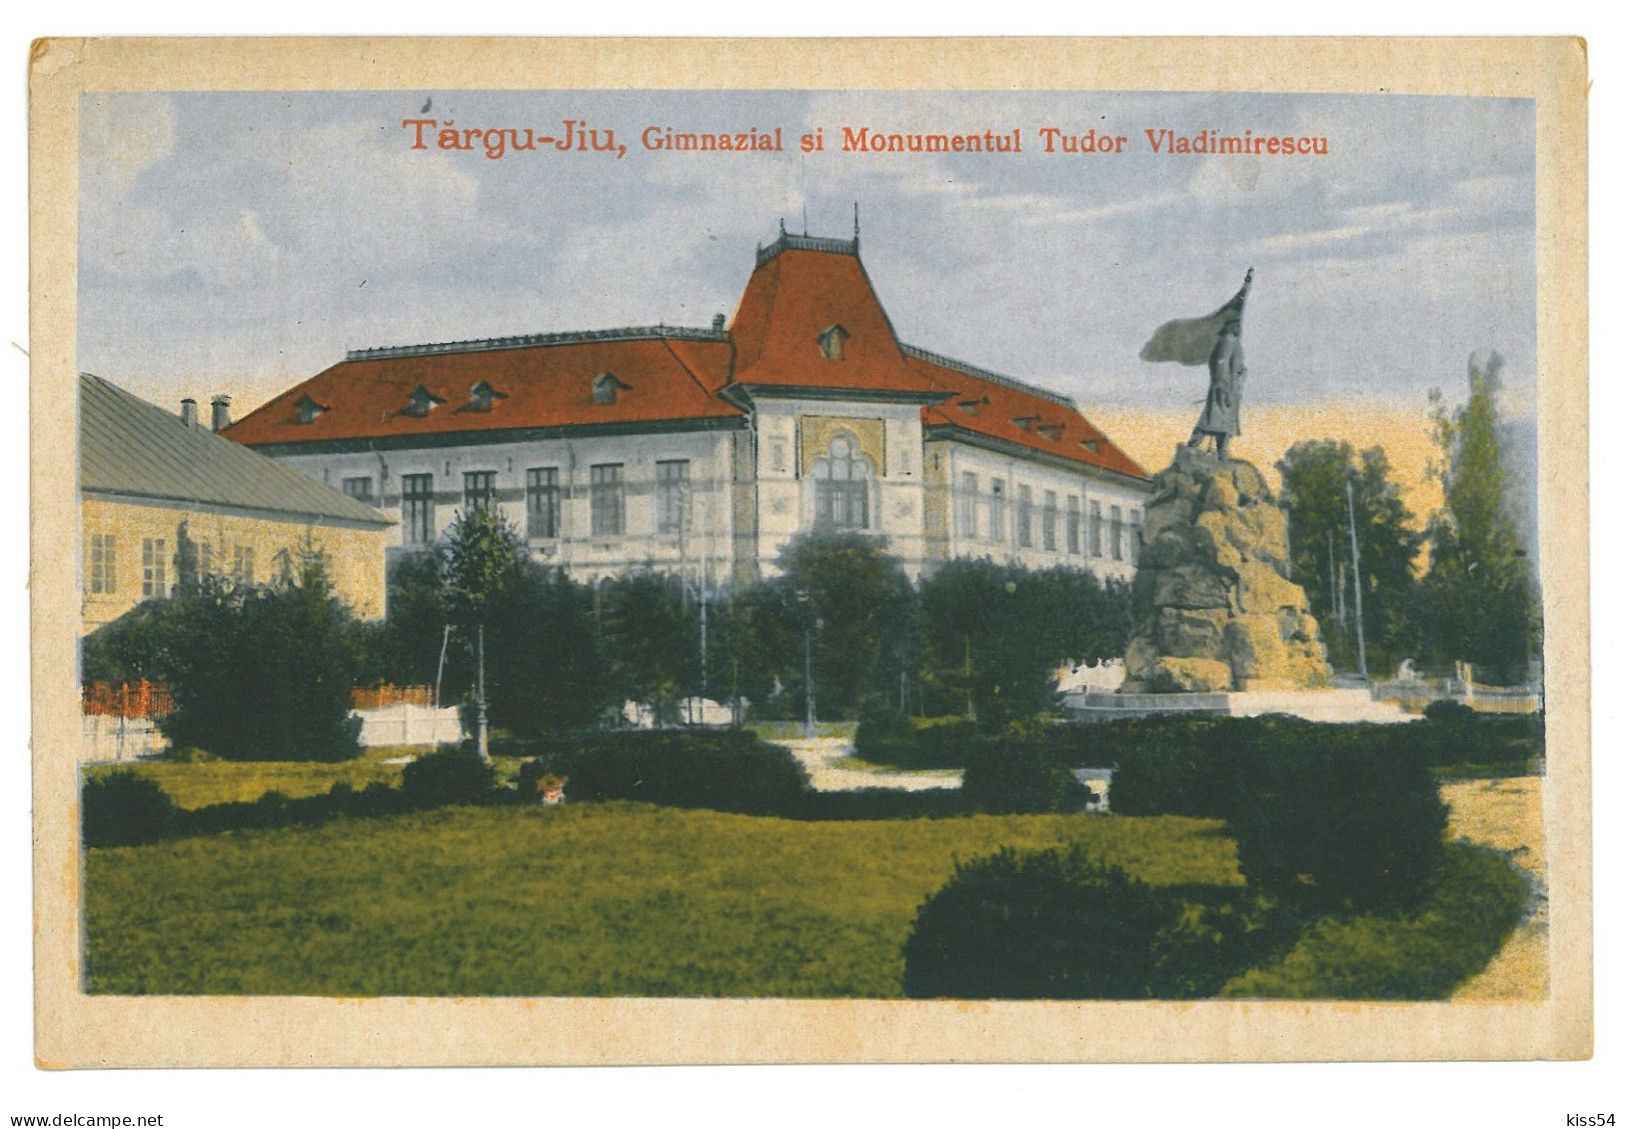 RO 83 - 20551 TARGU-JIU, School, Statue, Romania - Old Postcard - Used - 1917 - Roemenië